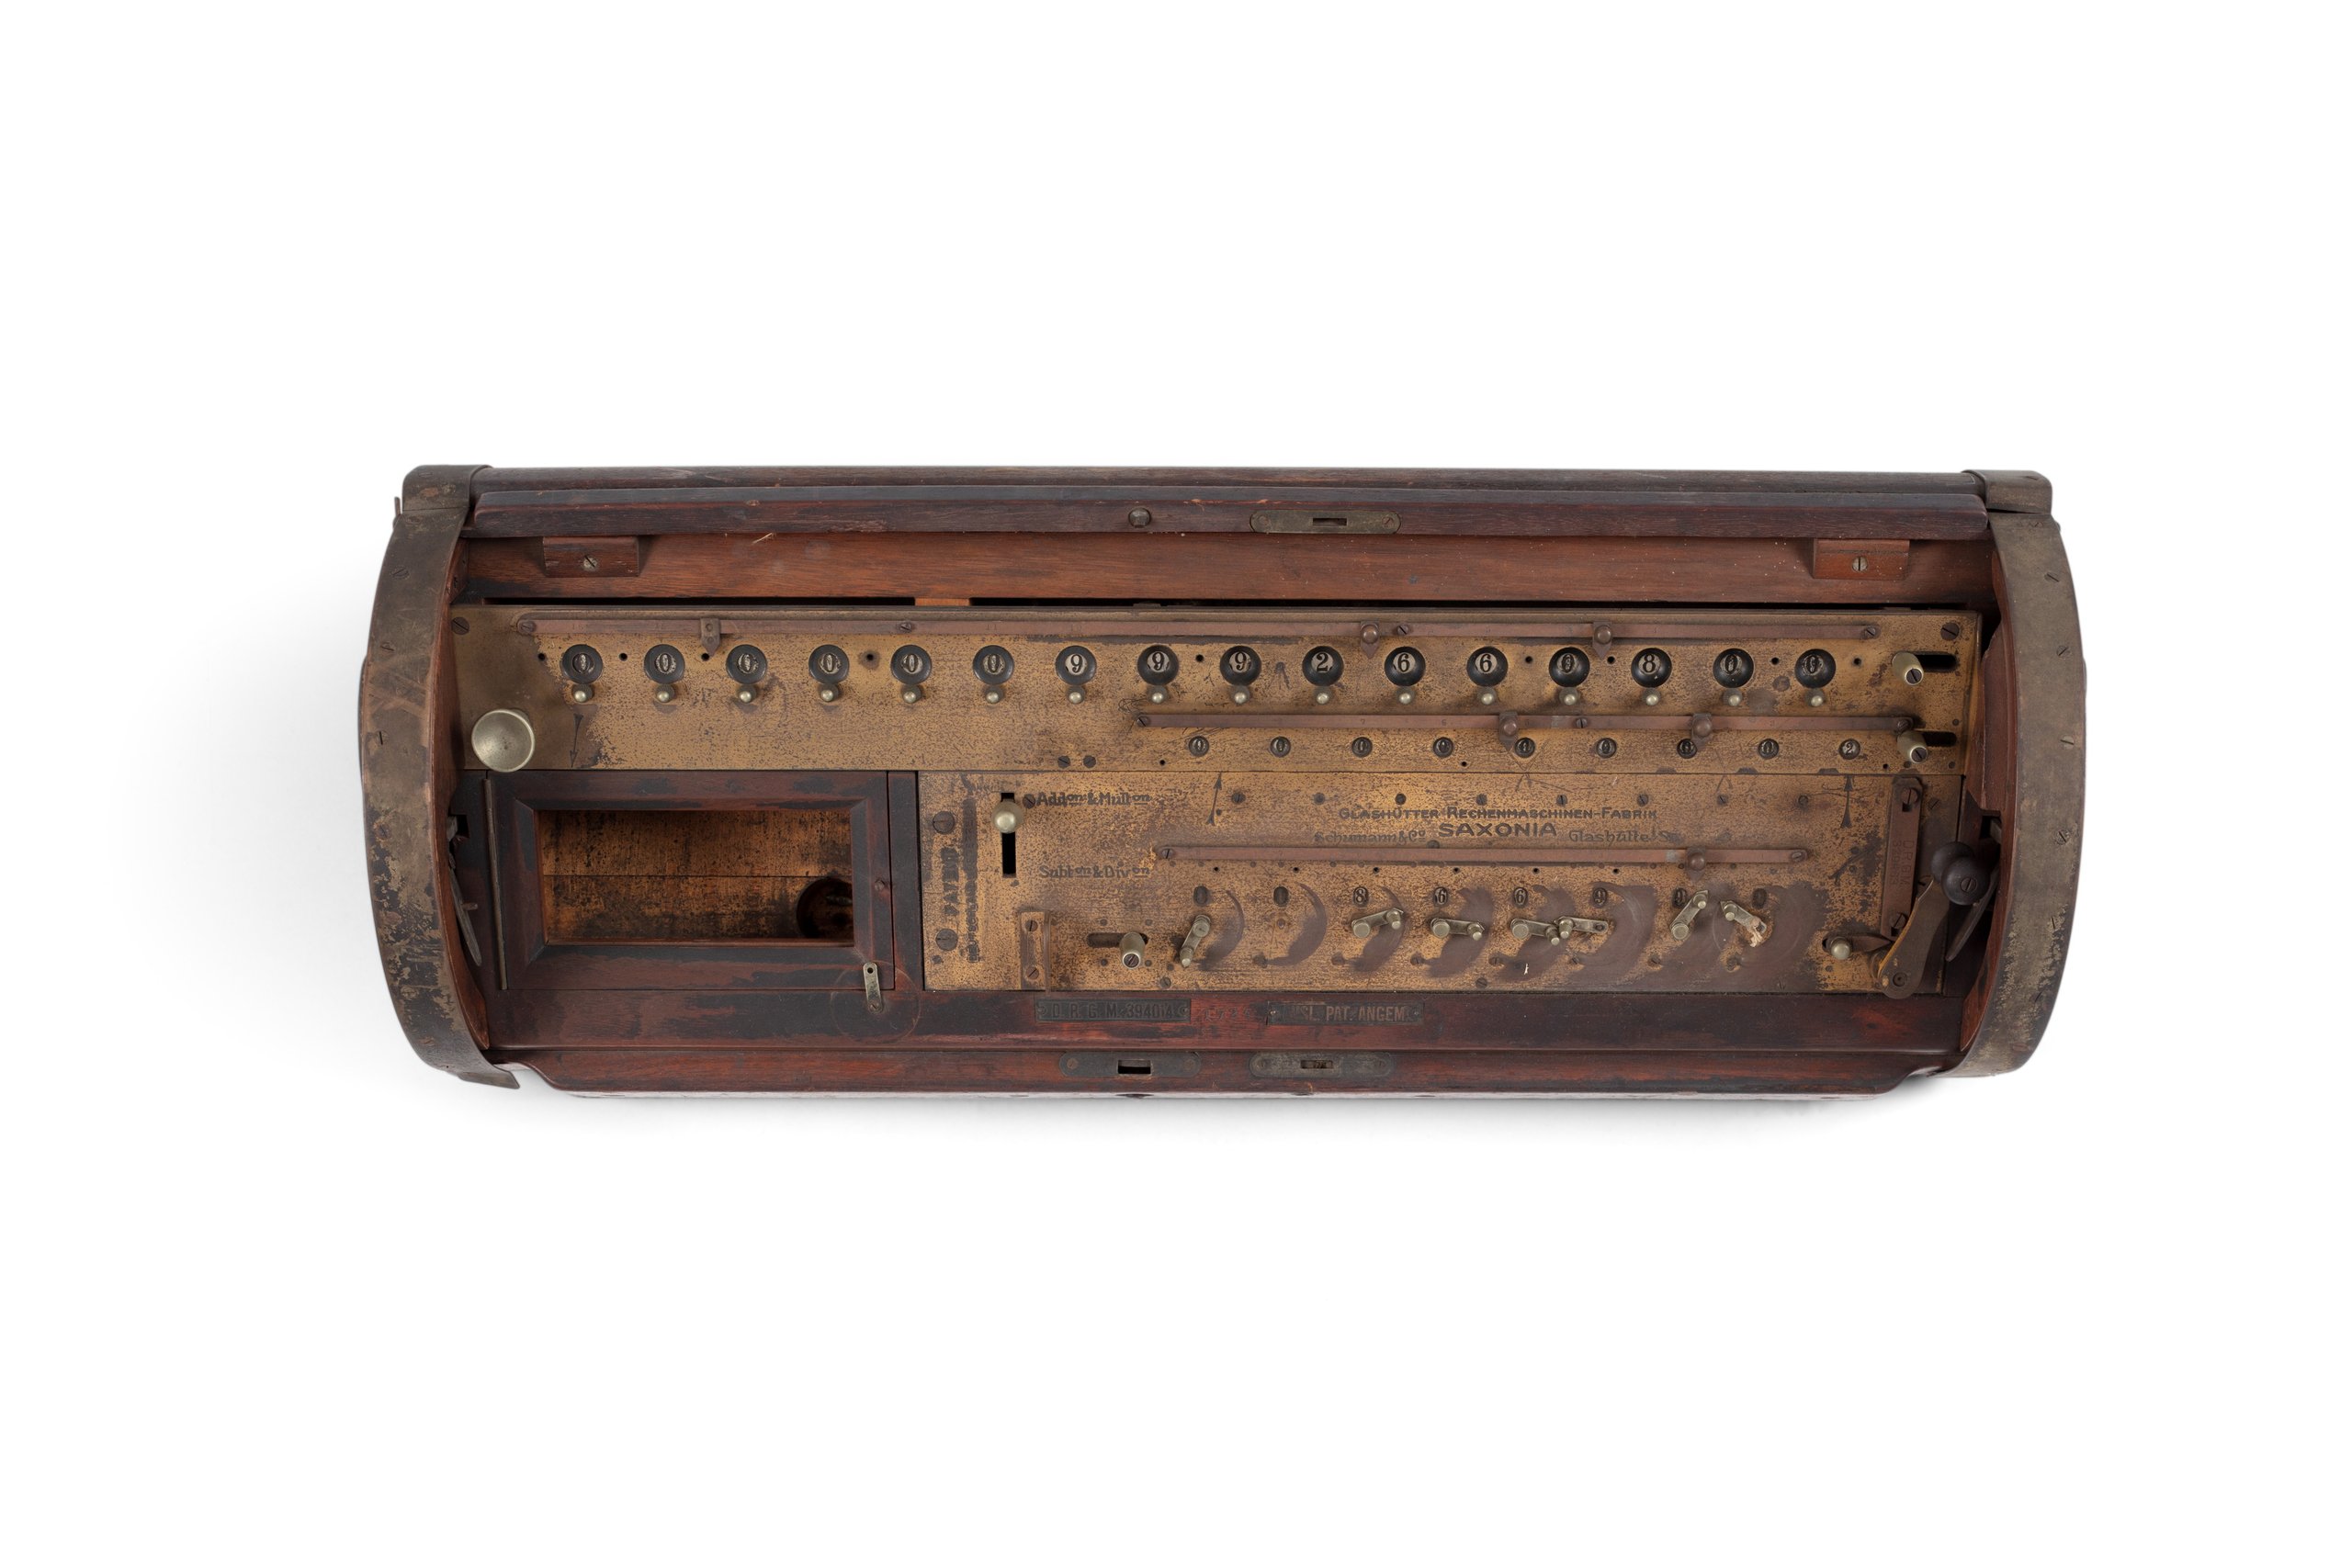 Mechanical calculator made by Schumann & Co